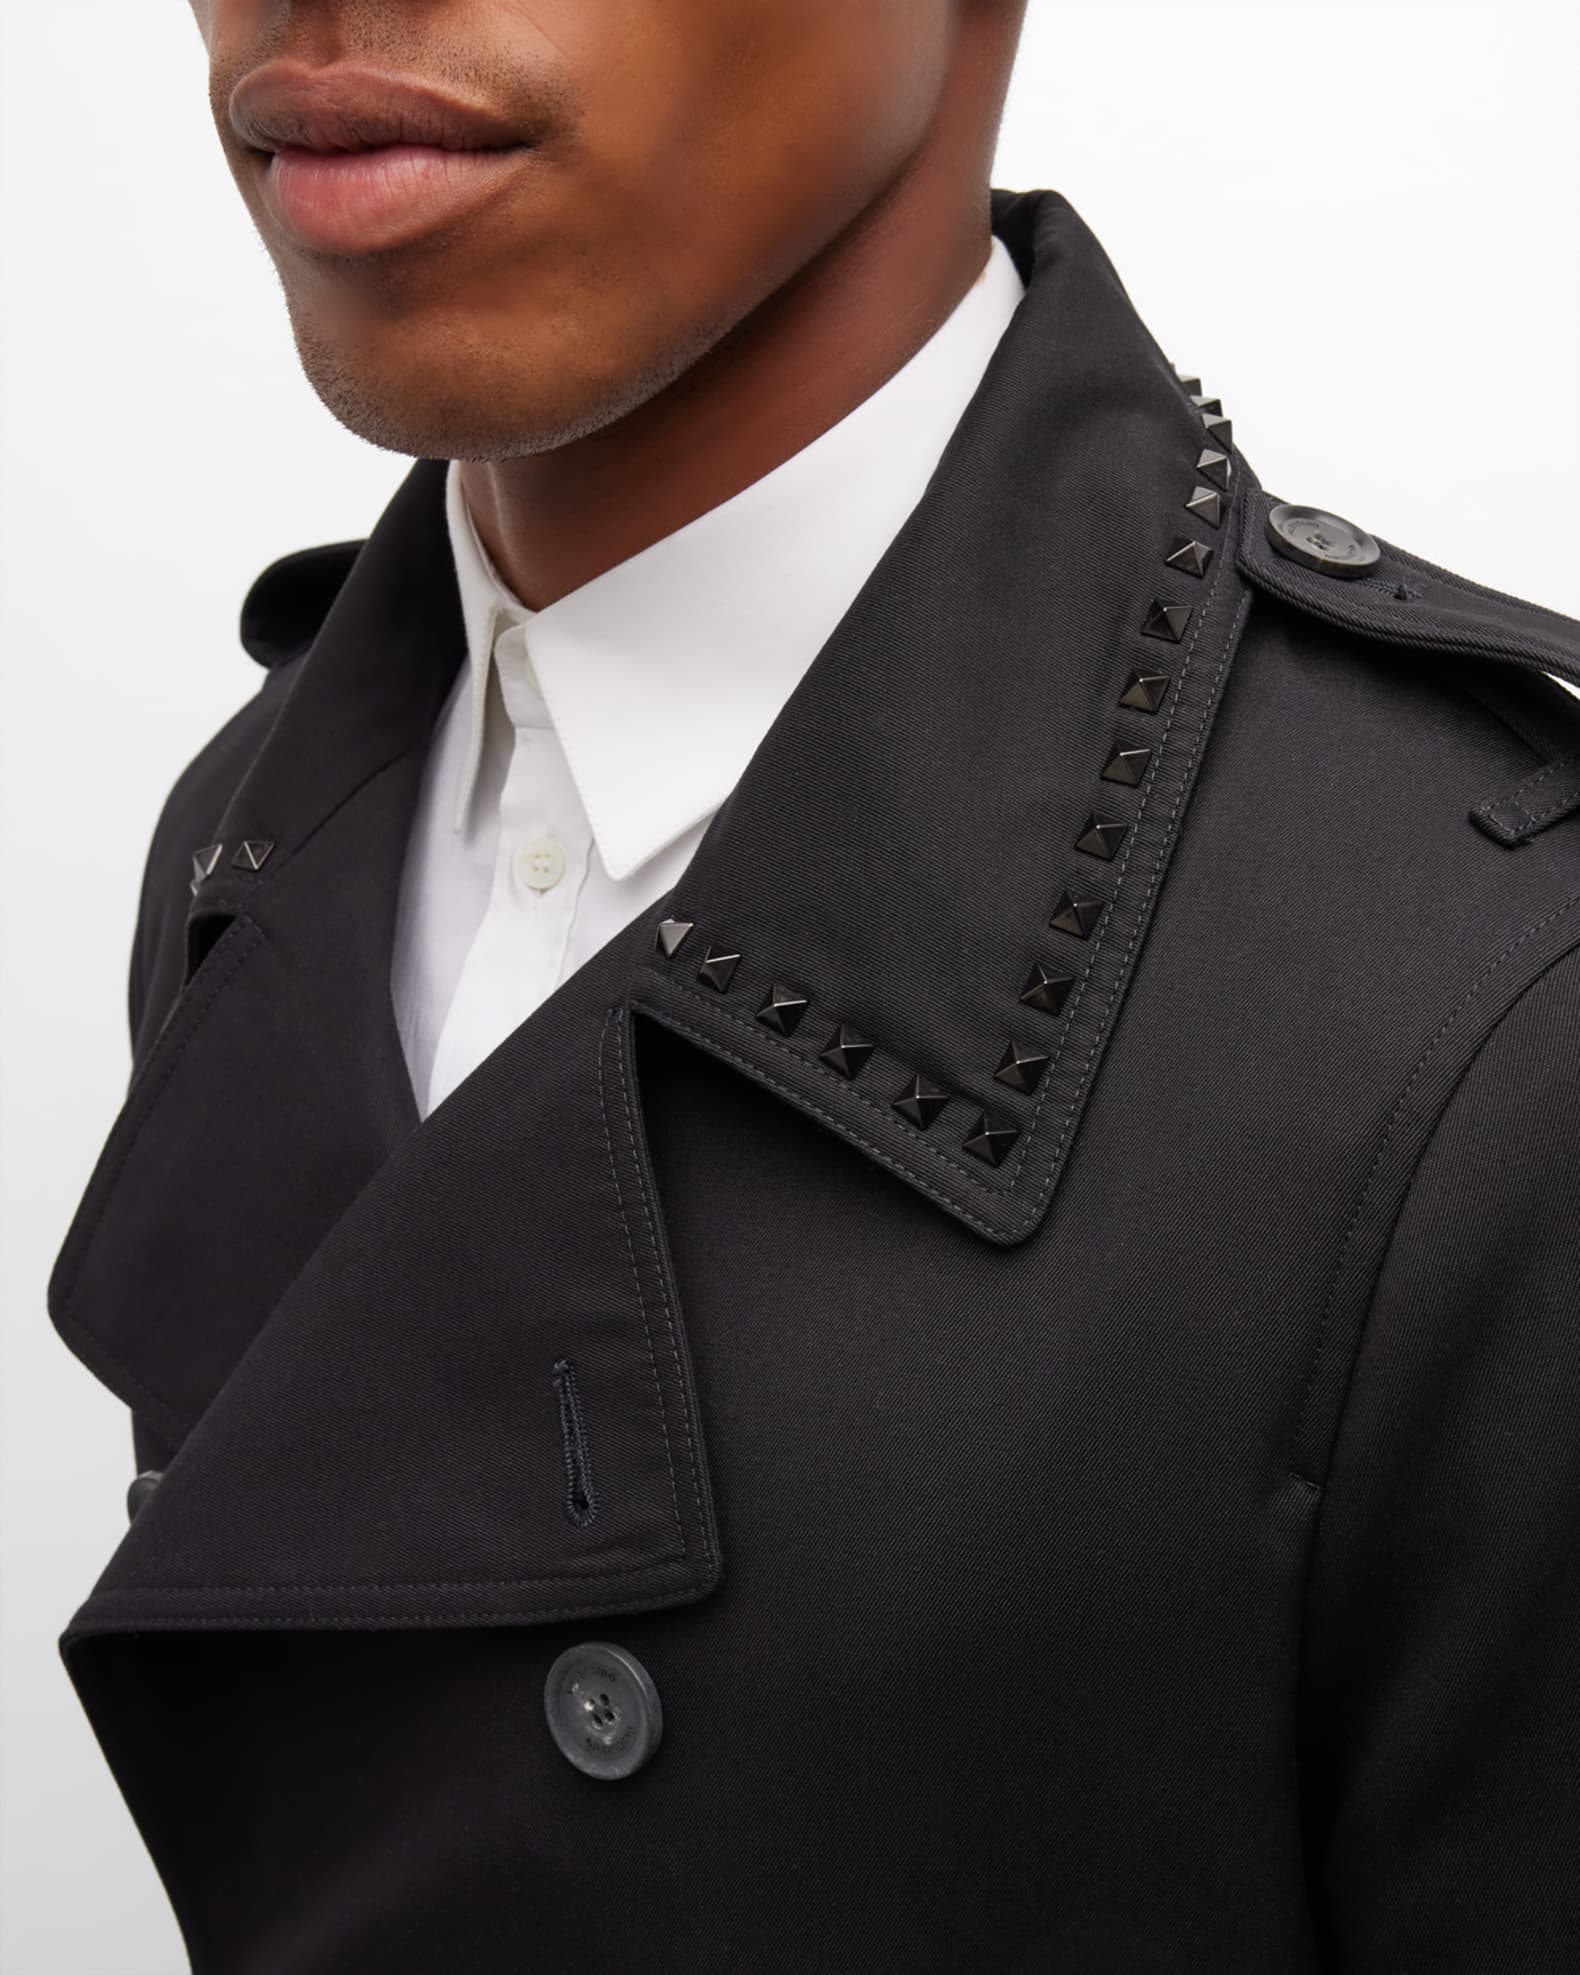 Valentino Garavani Men's Trench Coat with Rockstud Collar | Neiman Marcus